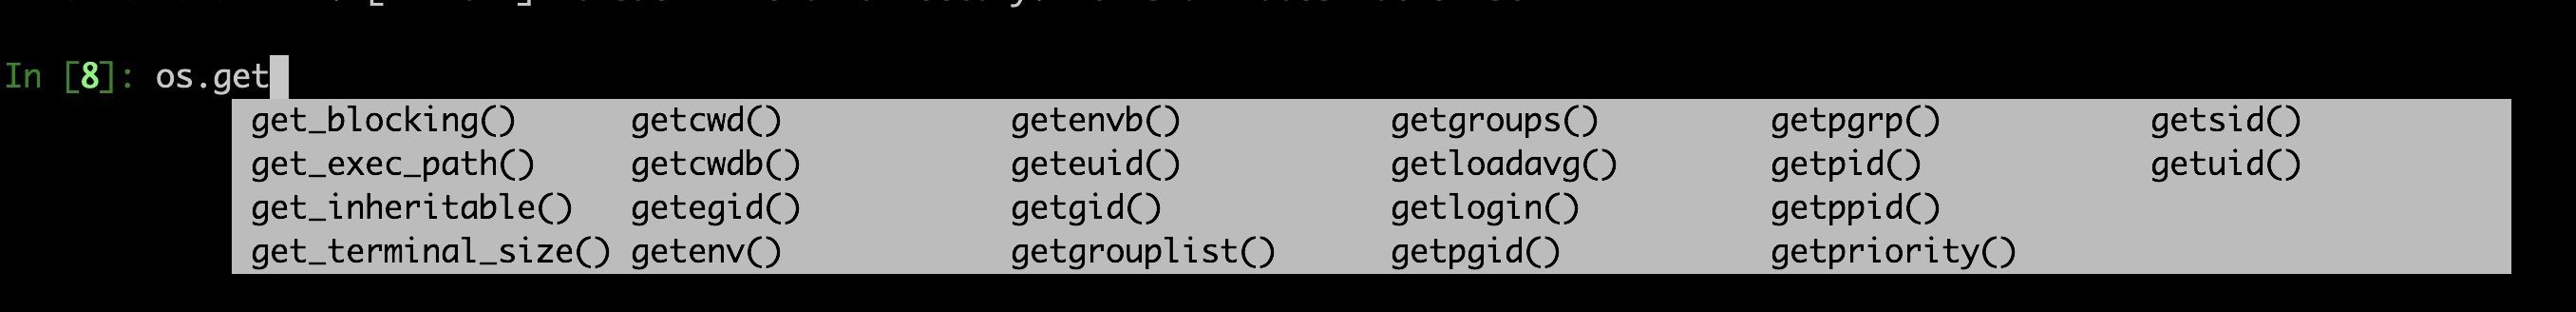 วิธีแทนที่ Bash ด้วย Python เป็นภาษาบรรทัดคำสั่ง Go-To ของคุณ 